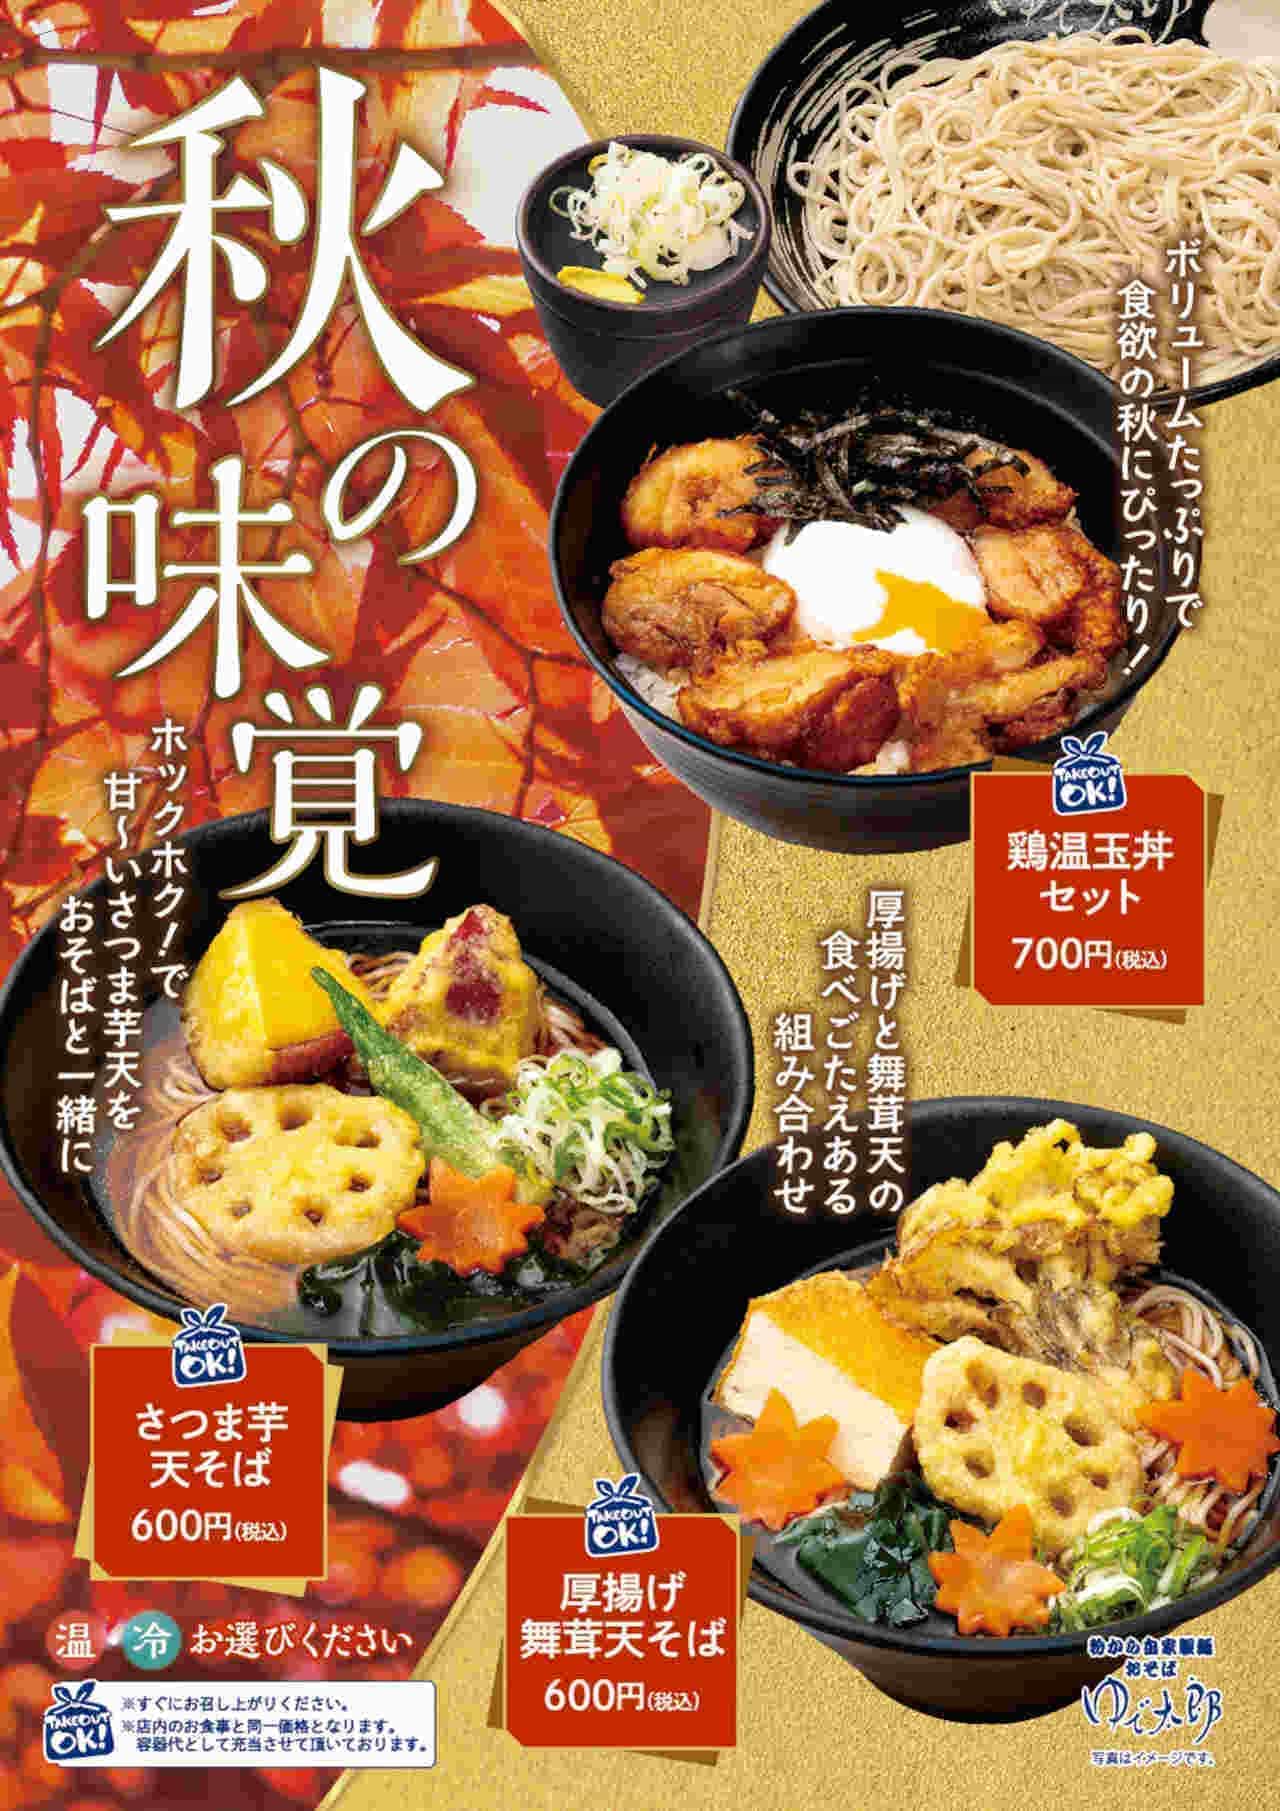 YUDETARO "Satsuma-imo Ten-soba", "Chicken On-tama Donburi Set", "Thick Fried Maitake Mushroom Ten-soba".